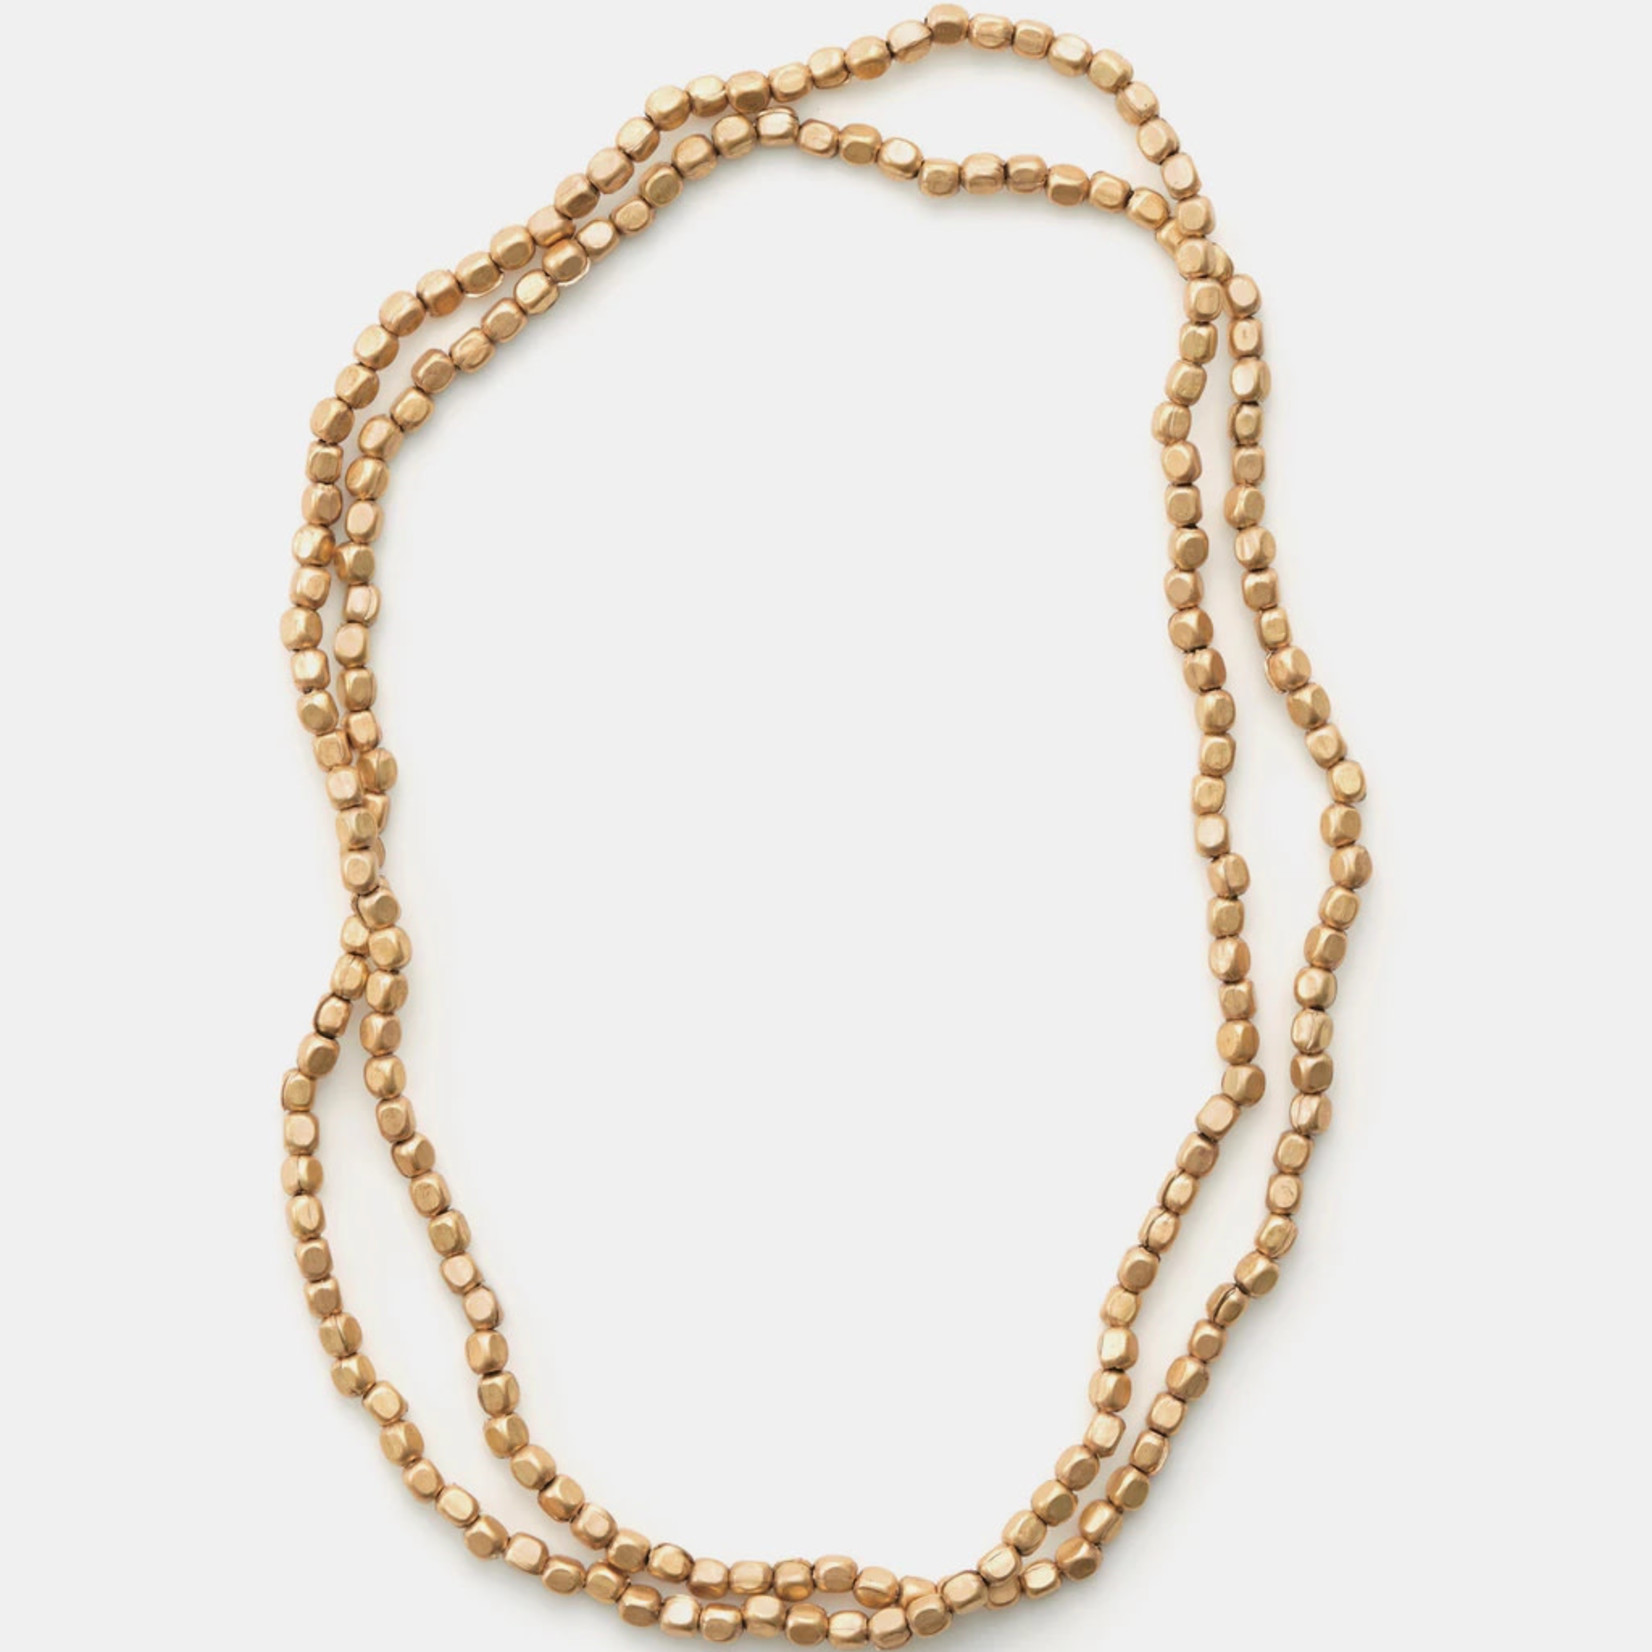 Fog Linen Fog Linen Brass Beads Necklace - Long